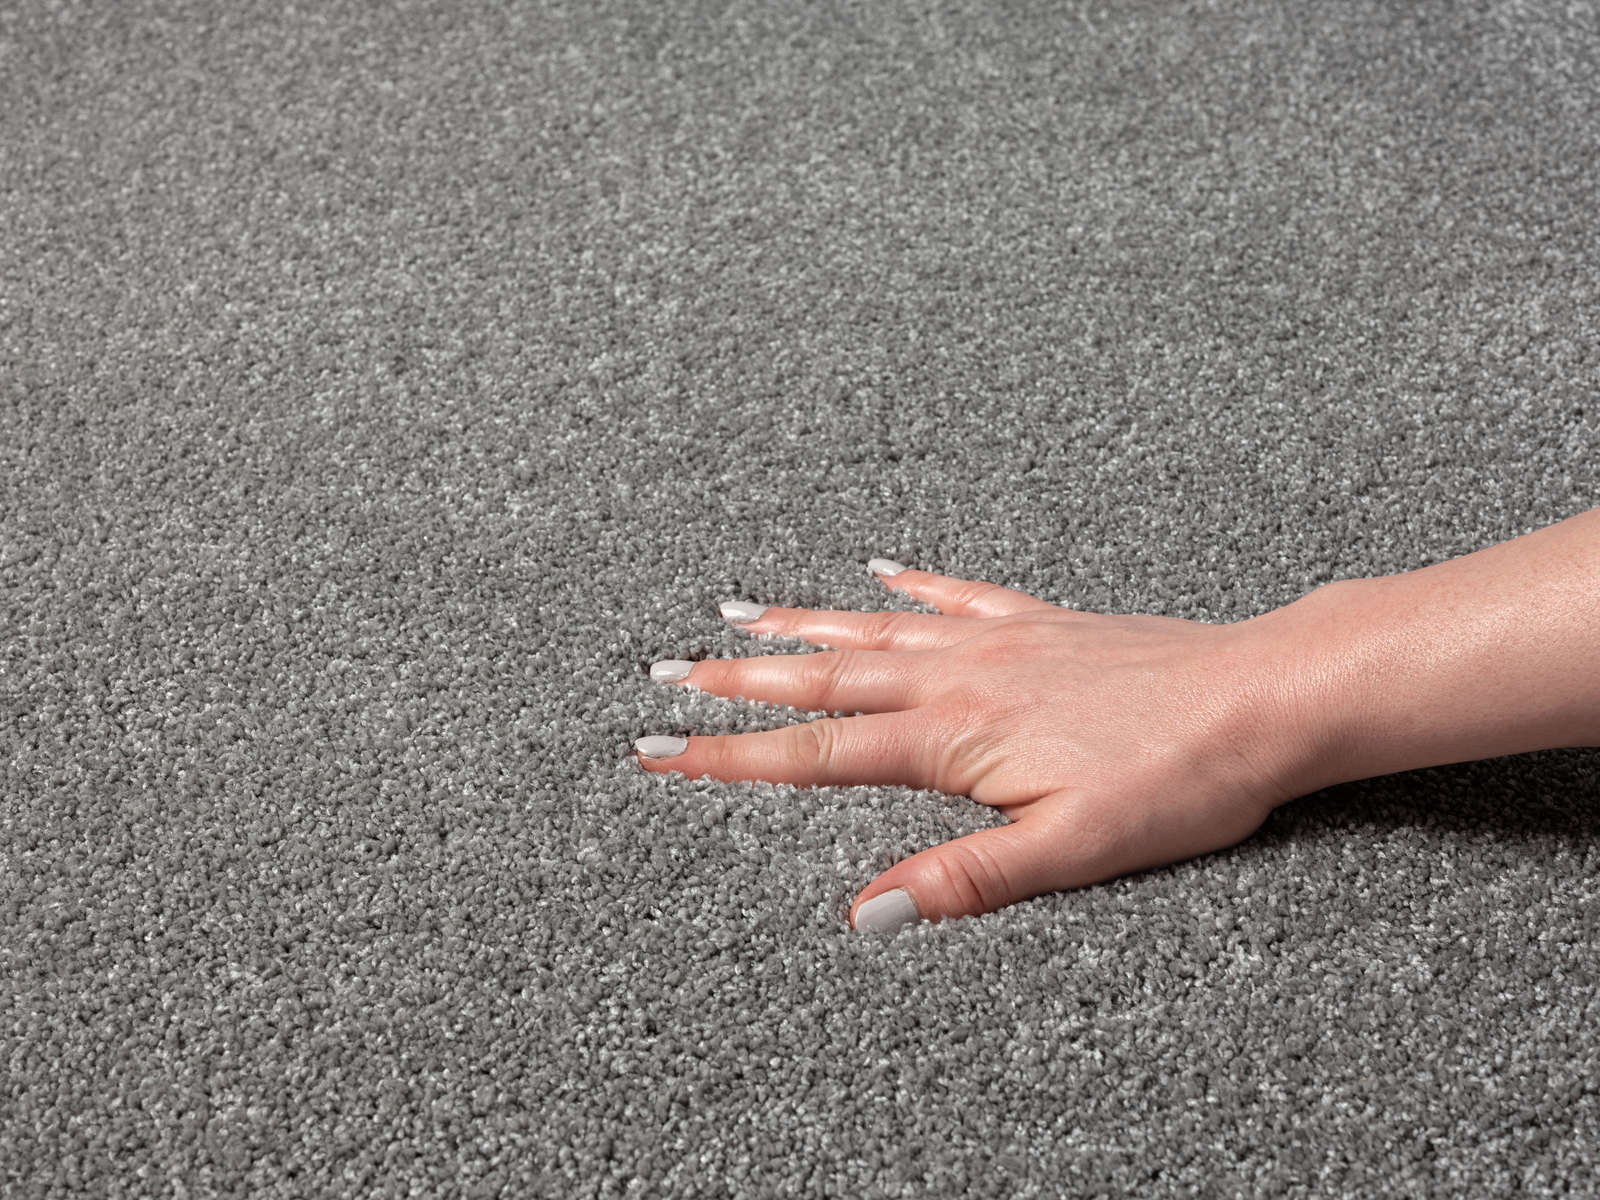             Pluizig kortpolig tapijt in grijs - 230 x 160 cm
        